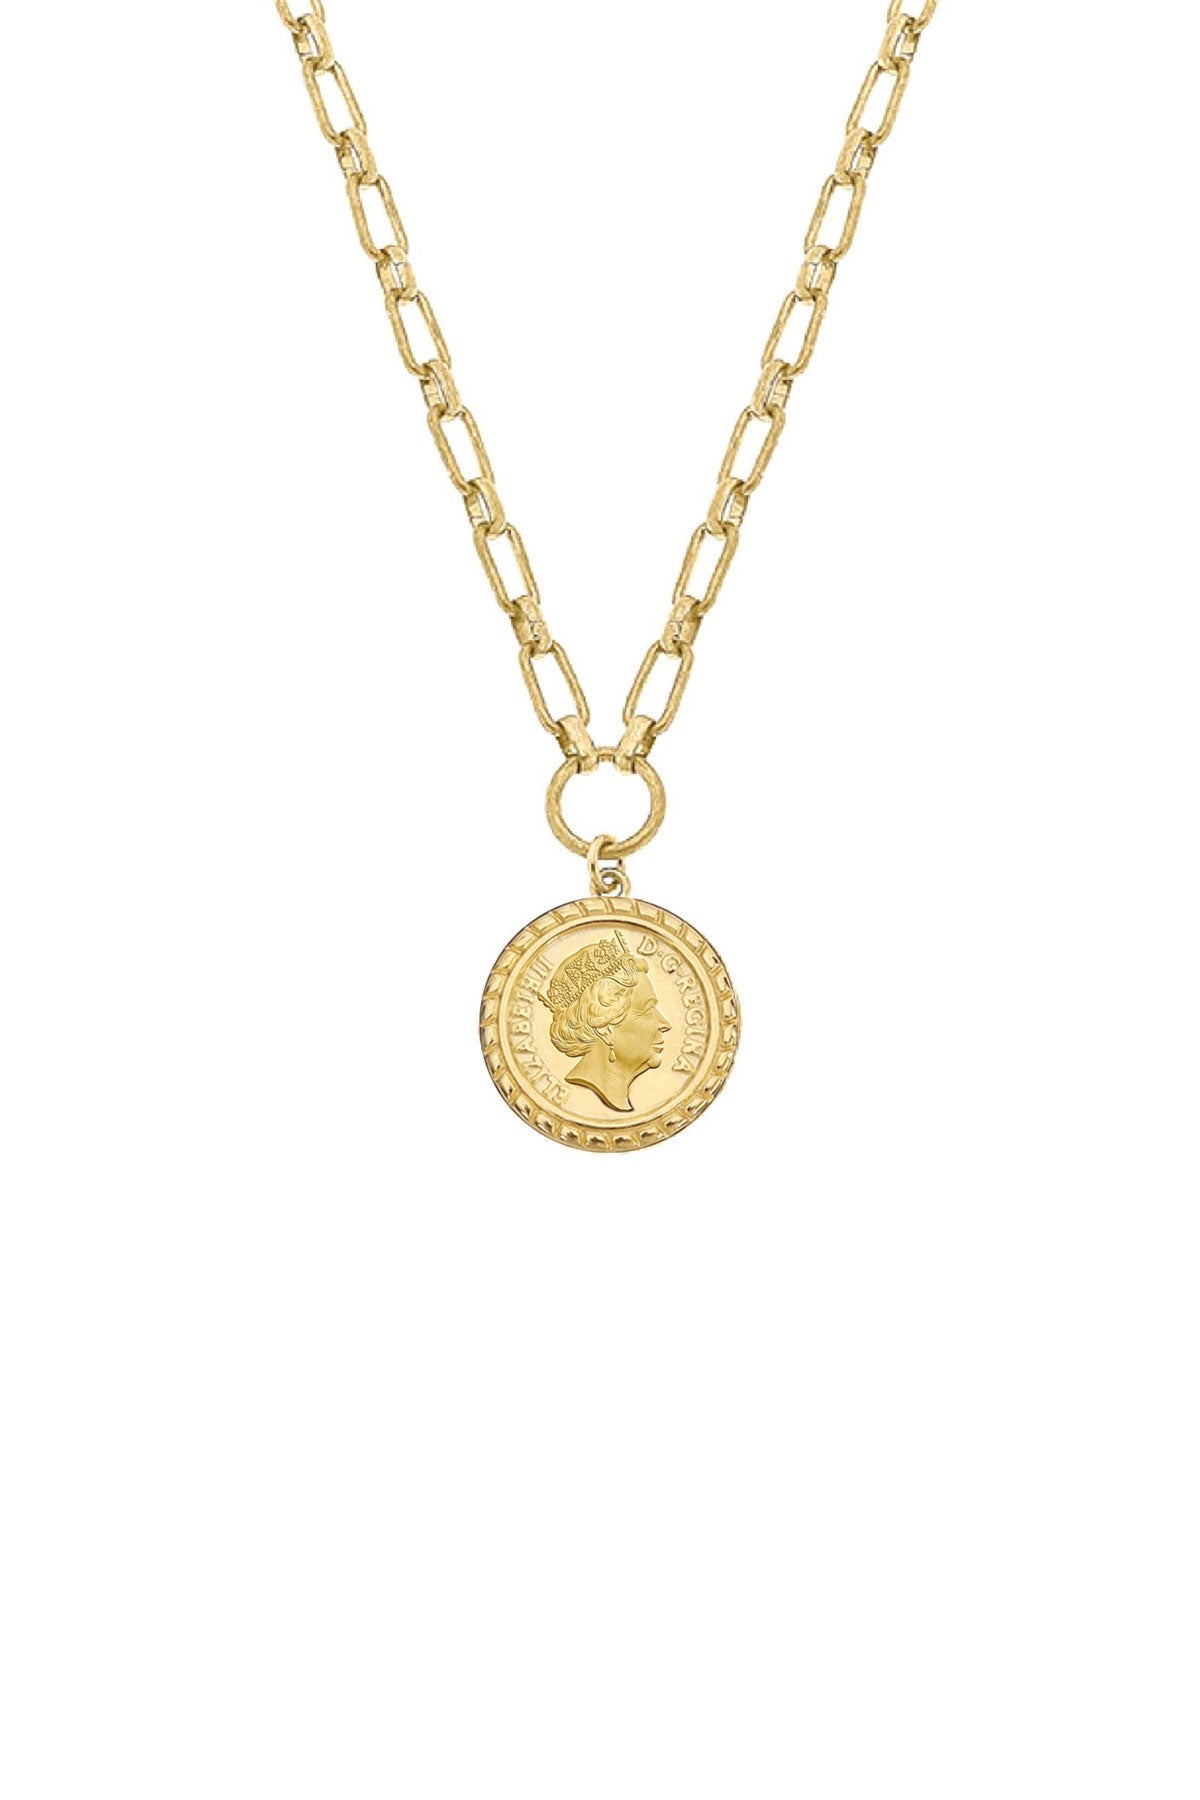 Queen Elizabeth Coin Necklace in Worn Gold